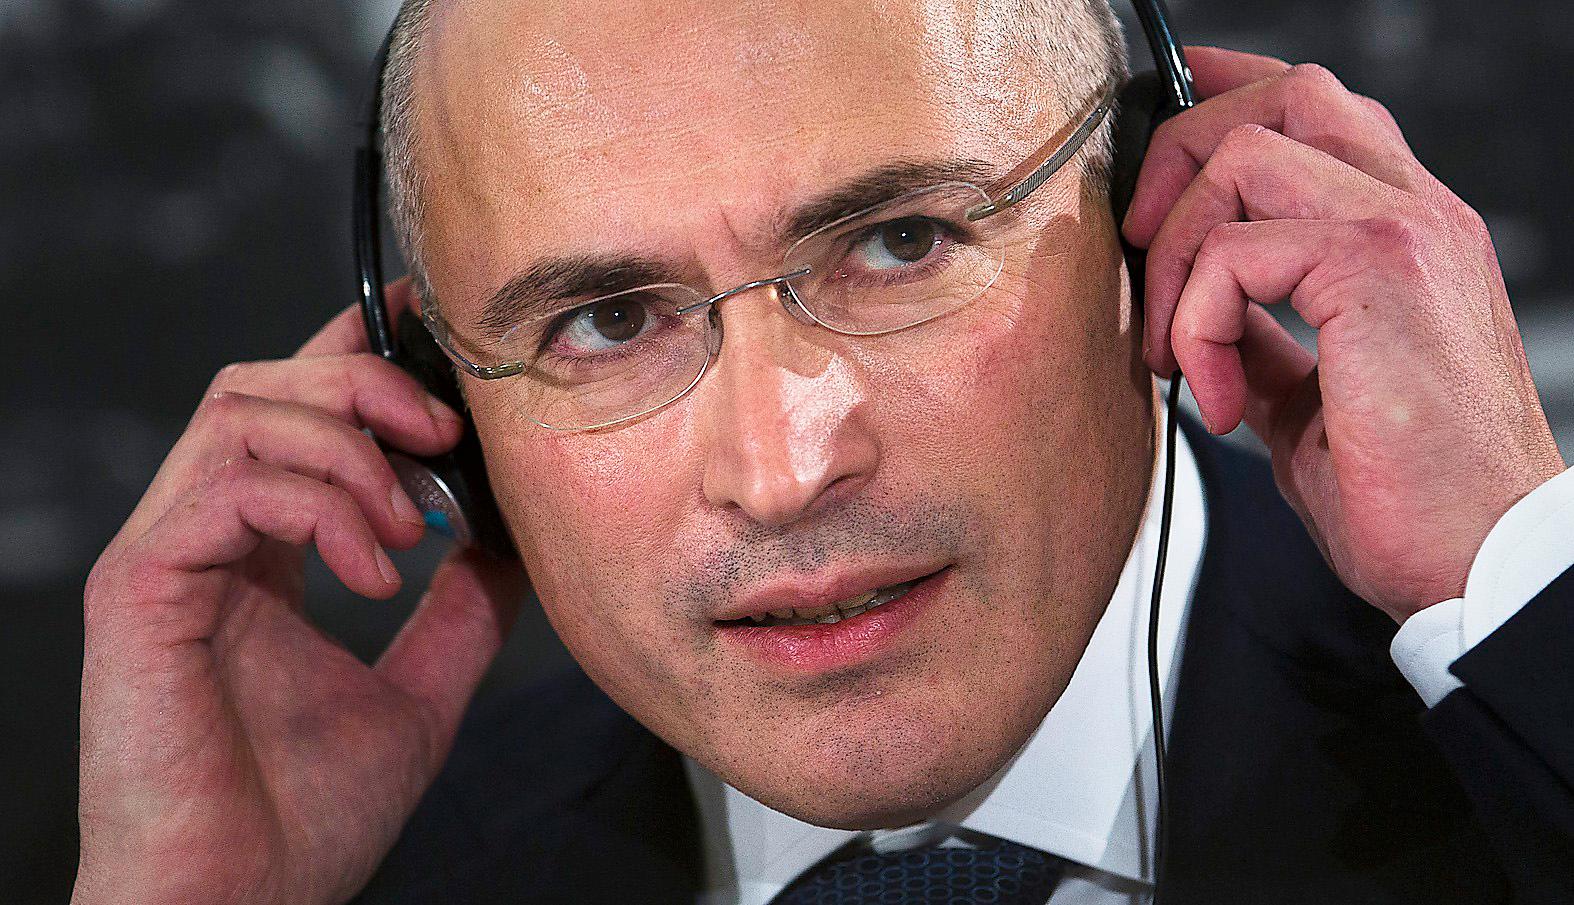 HJÄLTE I VÄST Ryske oligarken Michail Chodorkovskij är populär bland västledare men har svagt folkligt stöd i Ryssland, skriver vänsterpolitikern Aleksej Sachnin och Rysslandskännaren Per Leander.